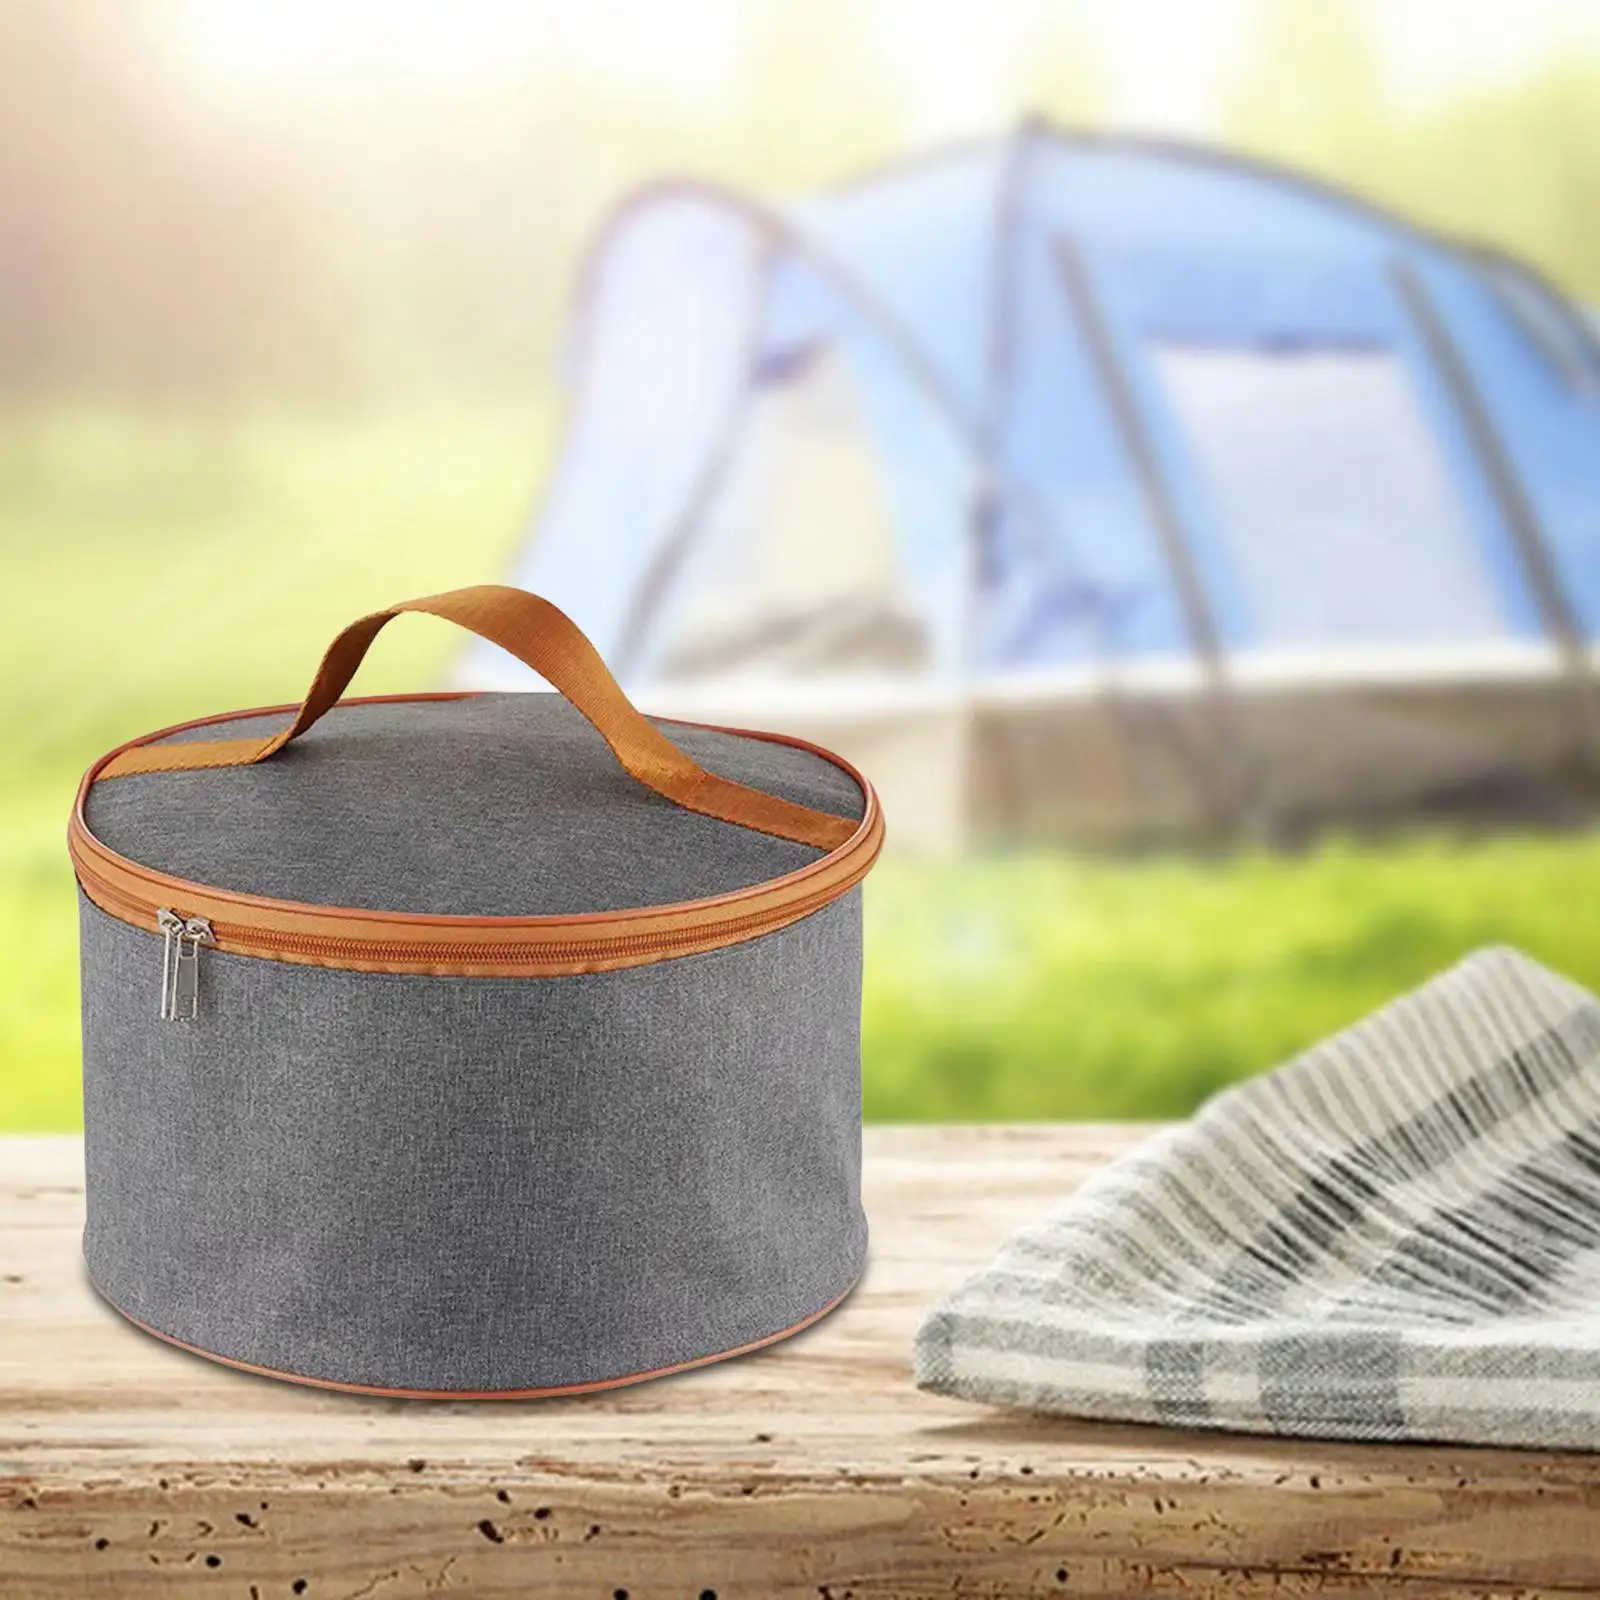 Camping Pot Storage Bag Dinnerware Organizer Waterproof Portable Tote Bag